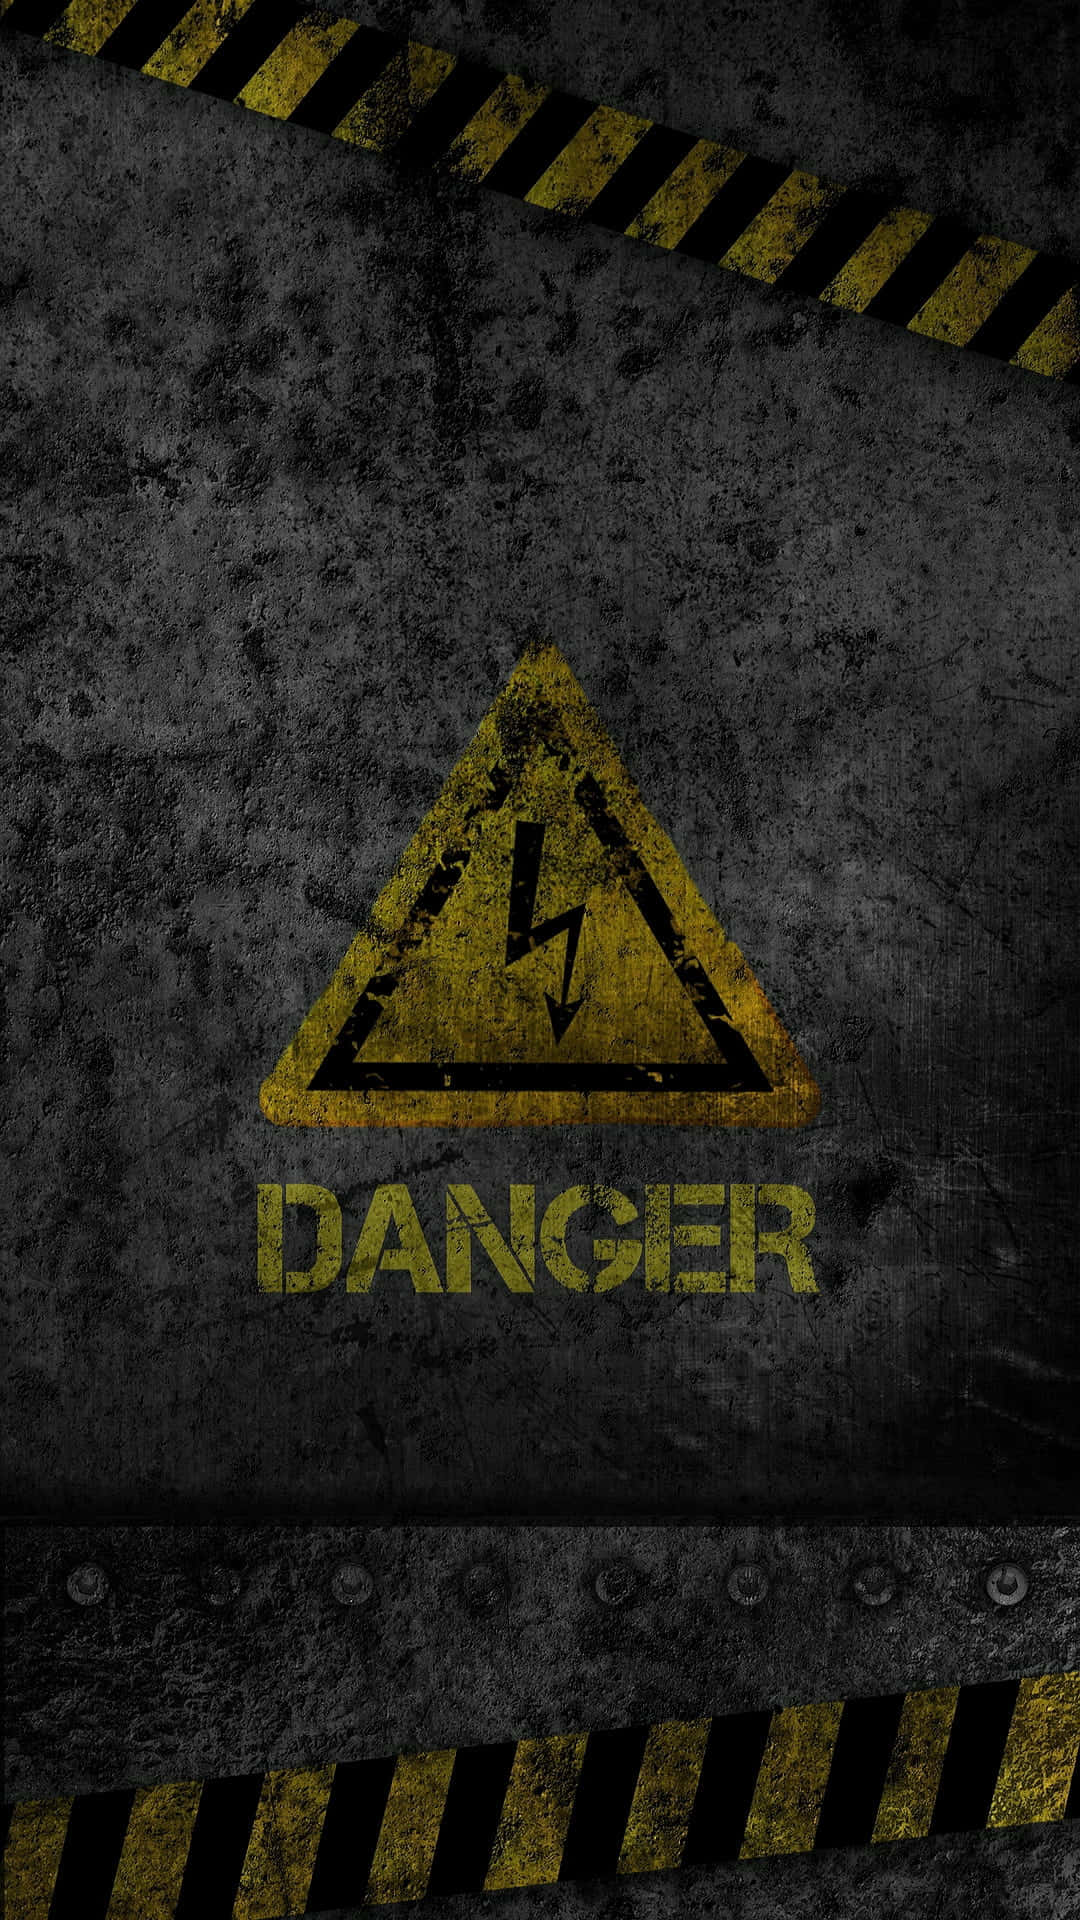 Beware danger lurking around the corner